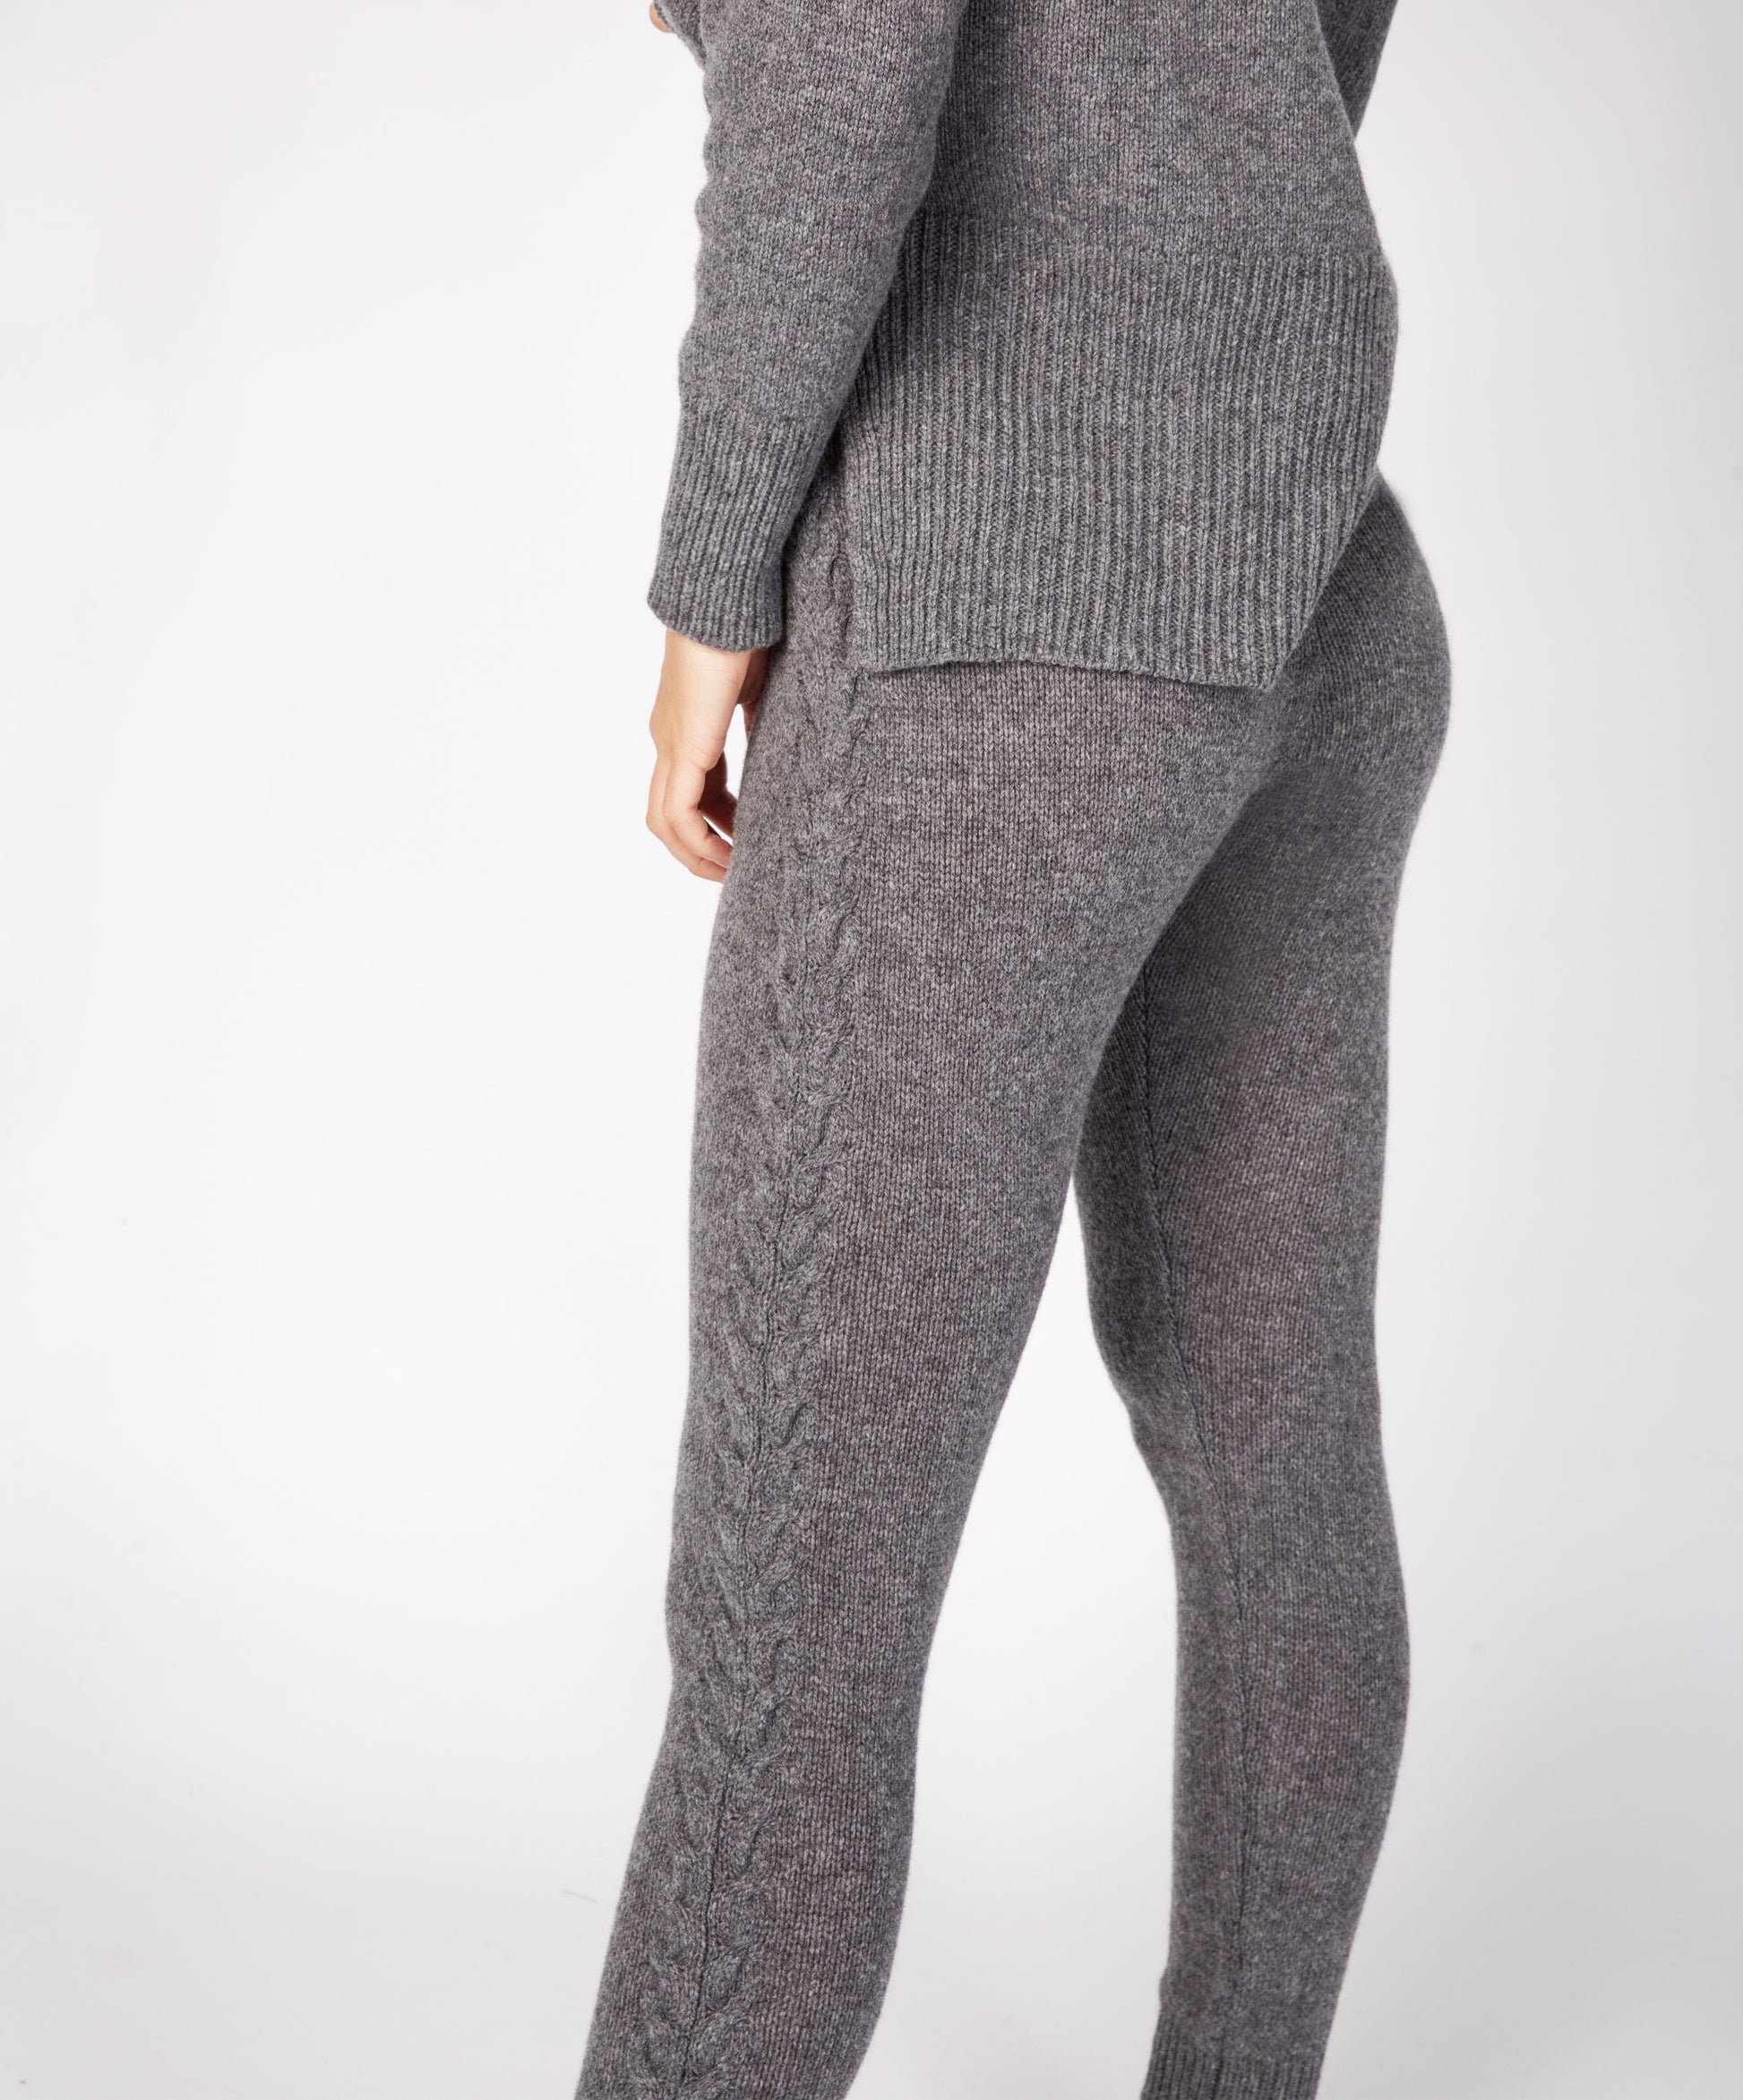 Womens Aran Leggings in Soft Grey - IrelandsEye Knitwear